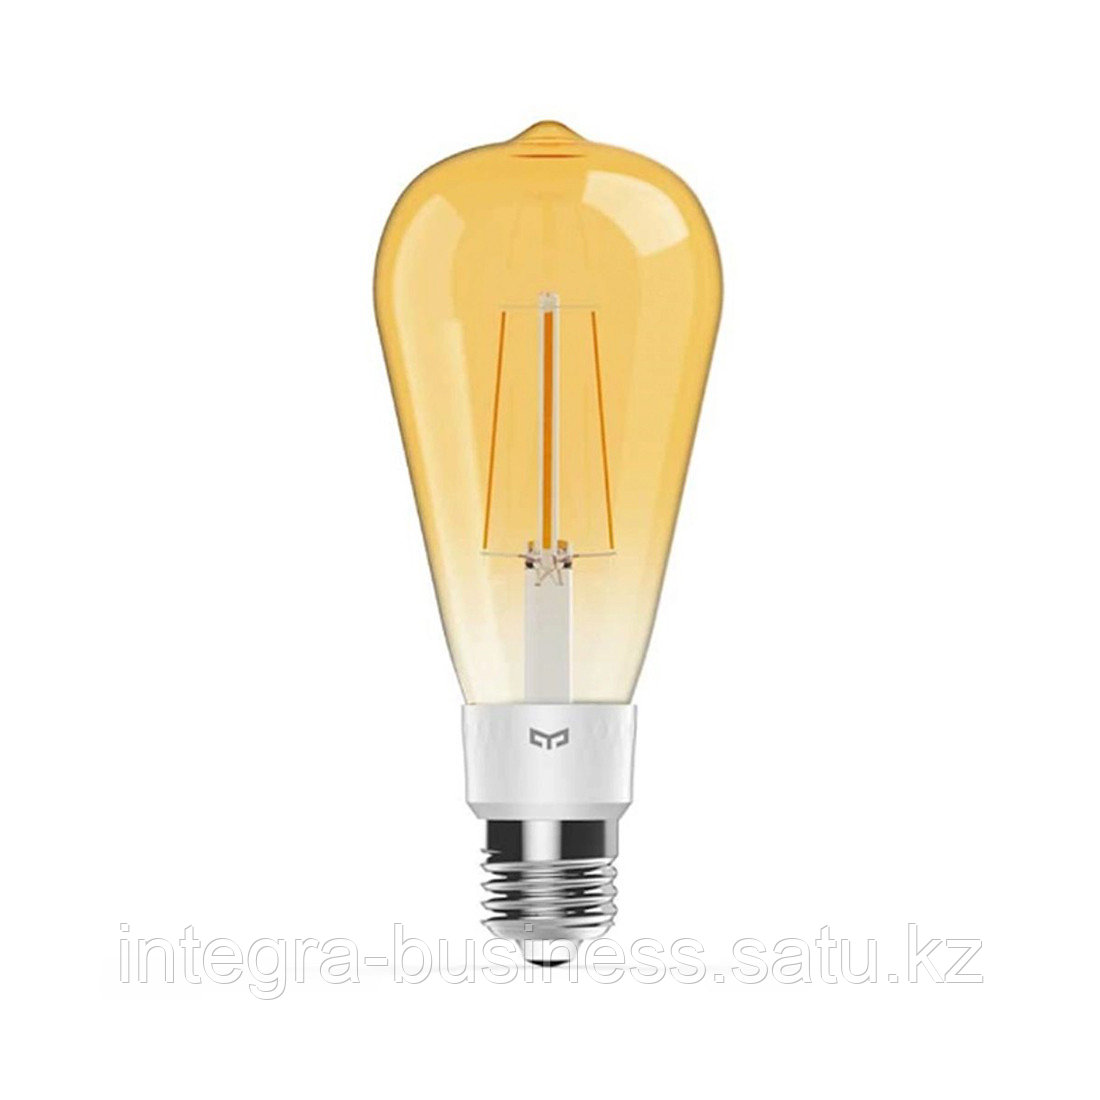 Лампочка Yeelight Smart LED Filament Bulb ST64, фото 1